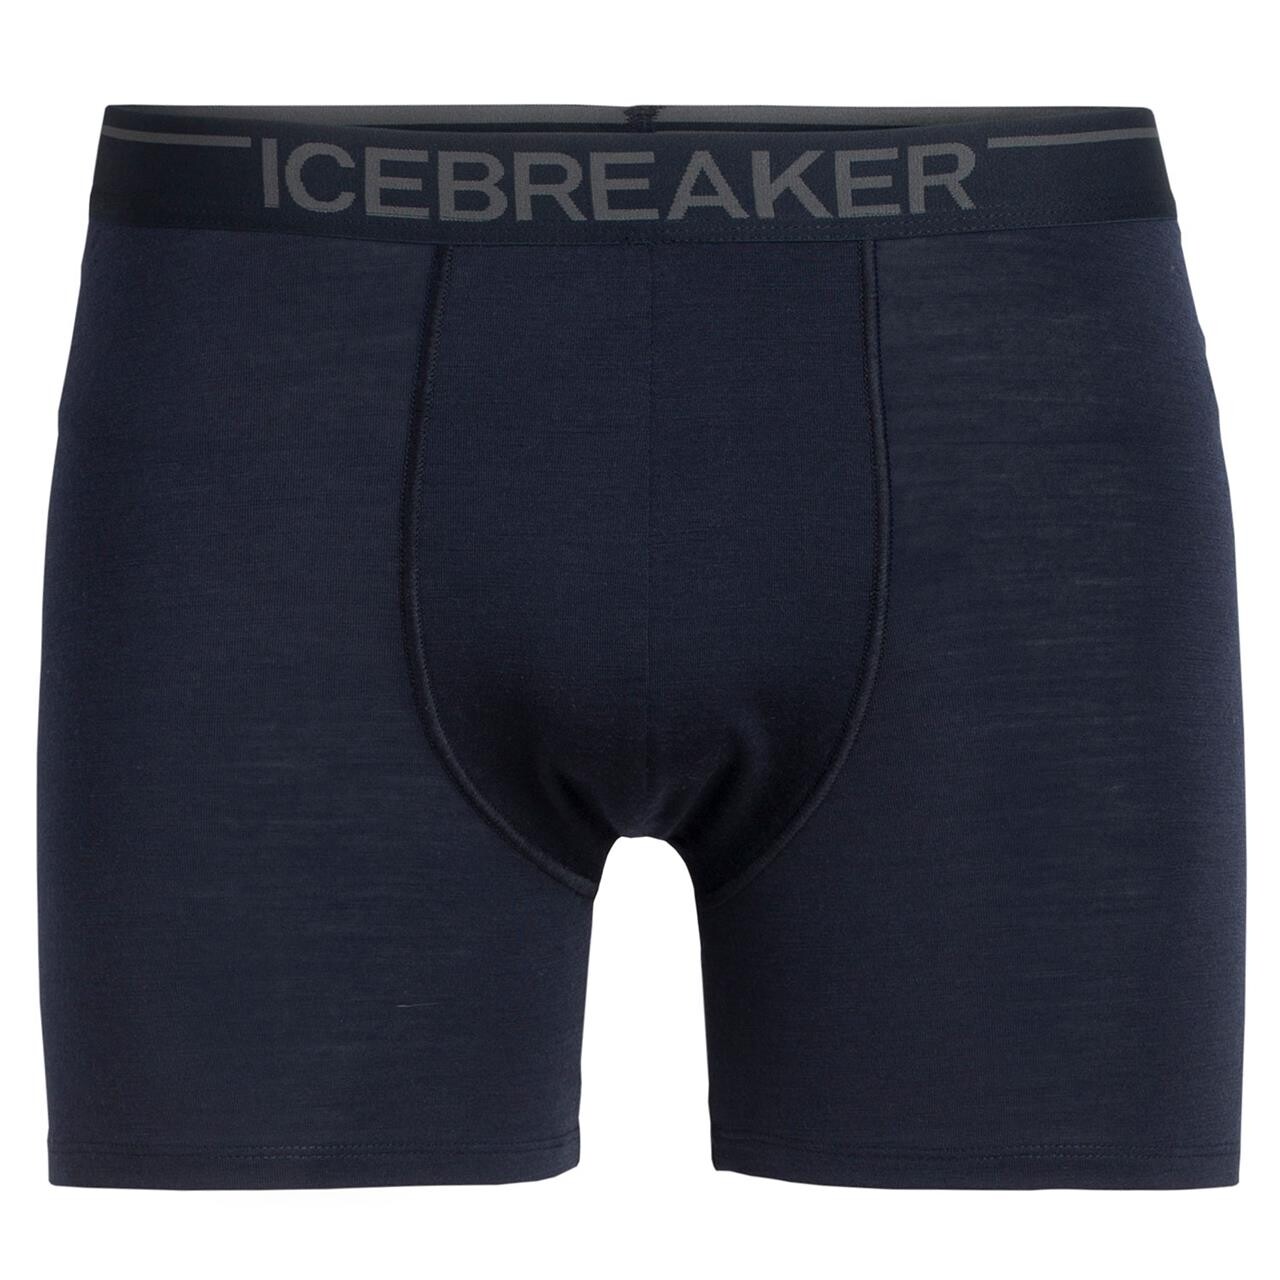 Billede af Icebreaker Mens Anatomica Boxers (Blå (MIDNIGHT NAVY) Small)